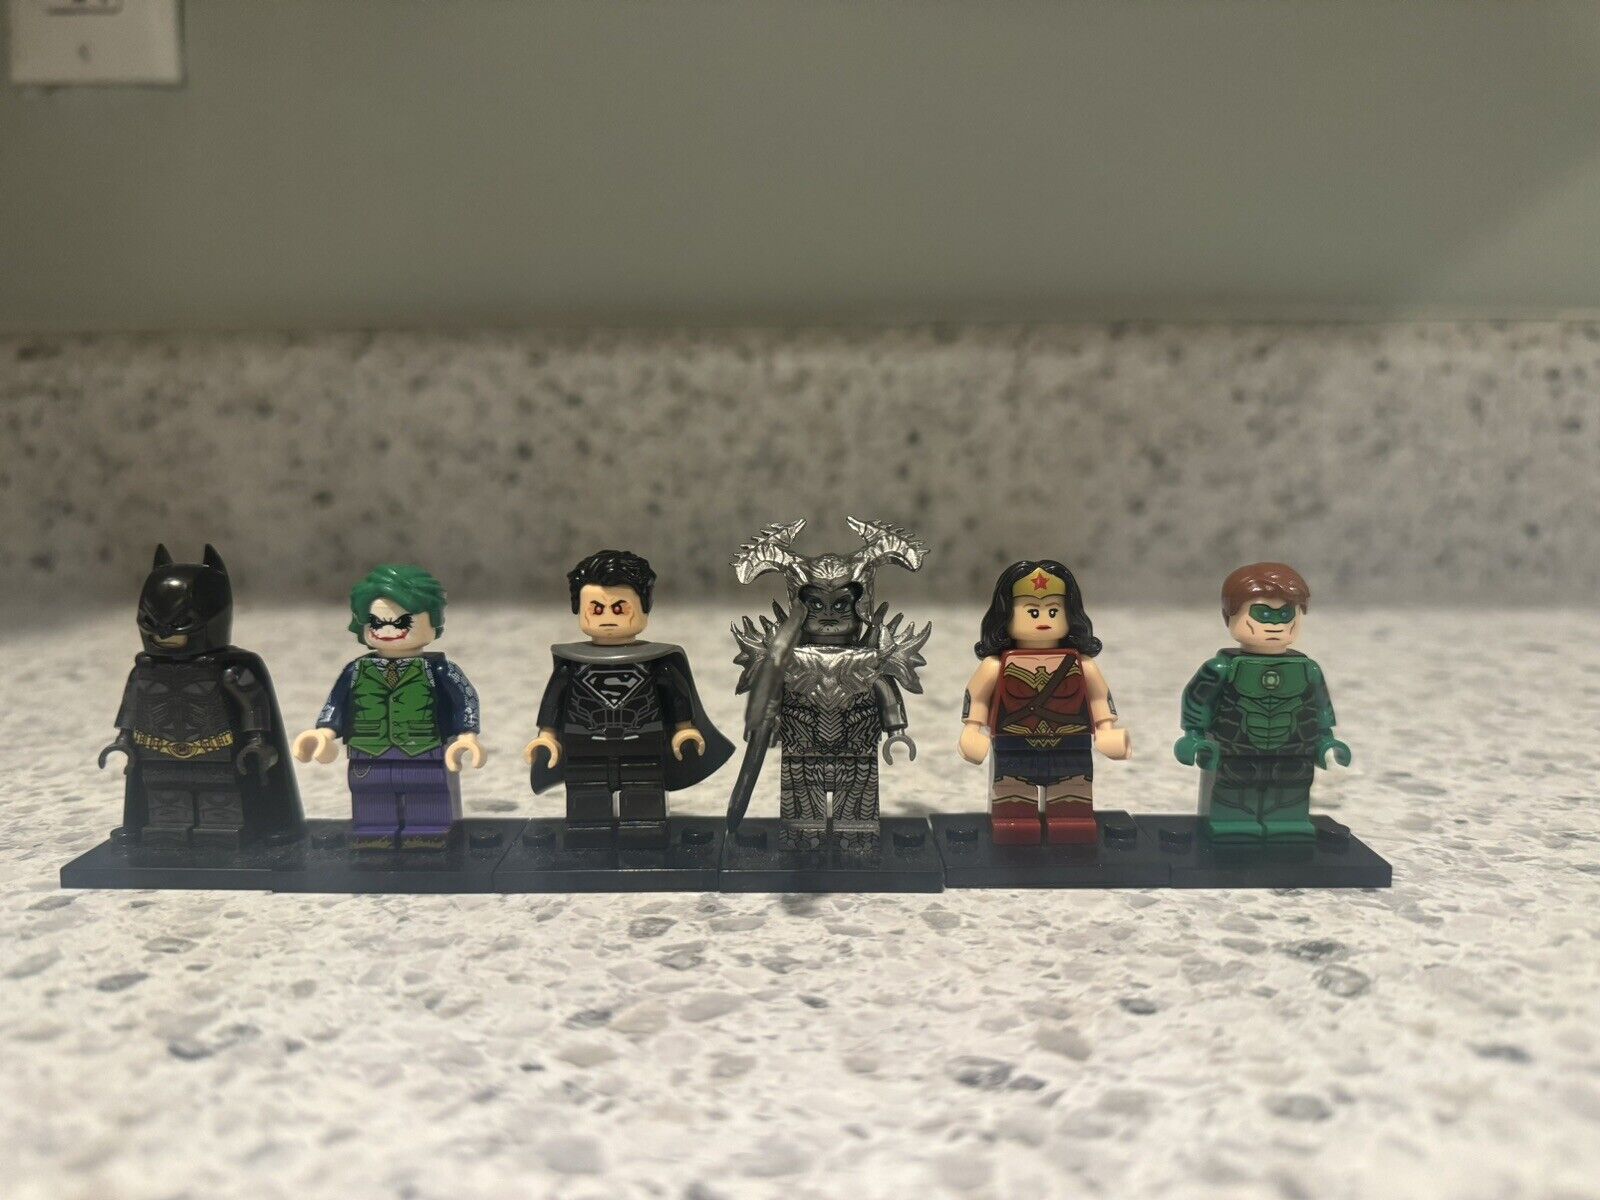 Batman , Joker, Superman, Wonder Woman, Green Lantern, Steppenwolf Minifigures